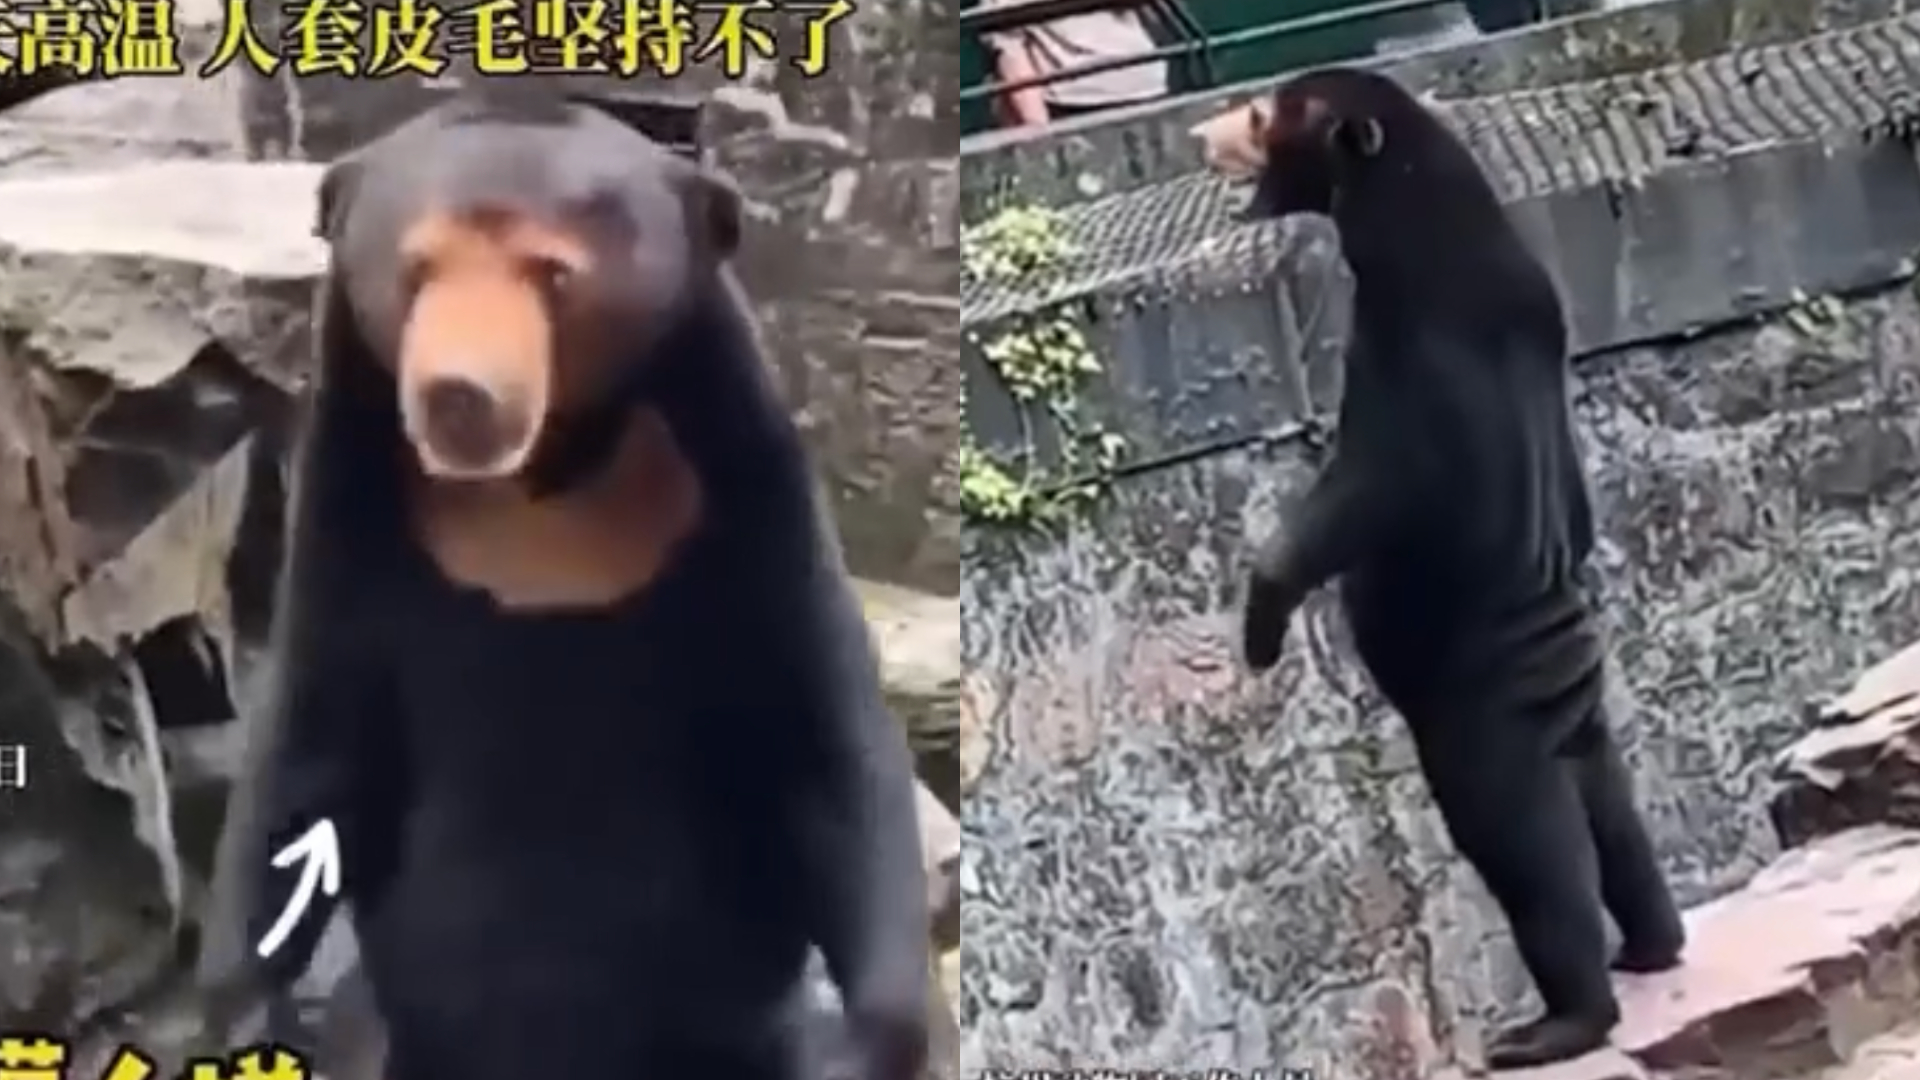 Zoológico chinês se pronuncia após rumores de que ursos do local são humanos fantasiados; veja fotos e vídeo